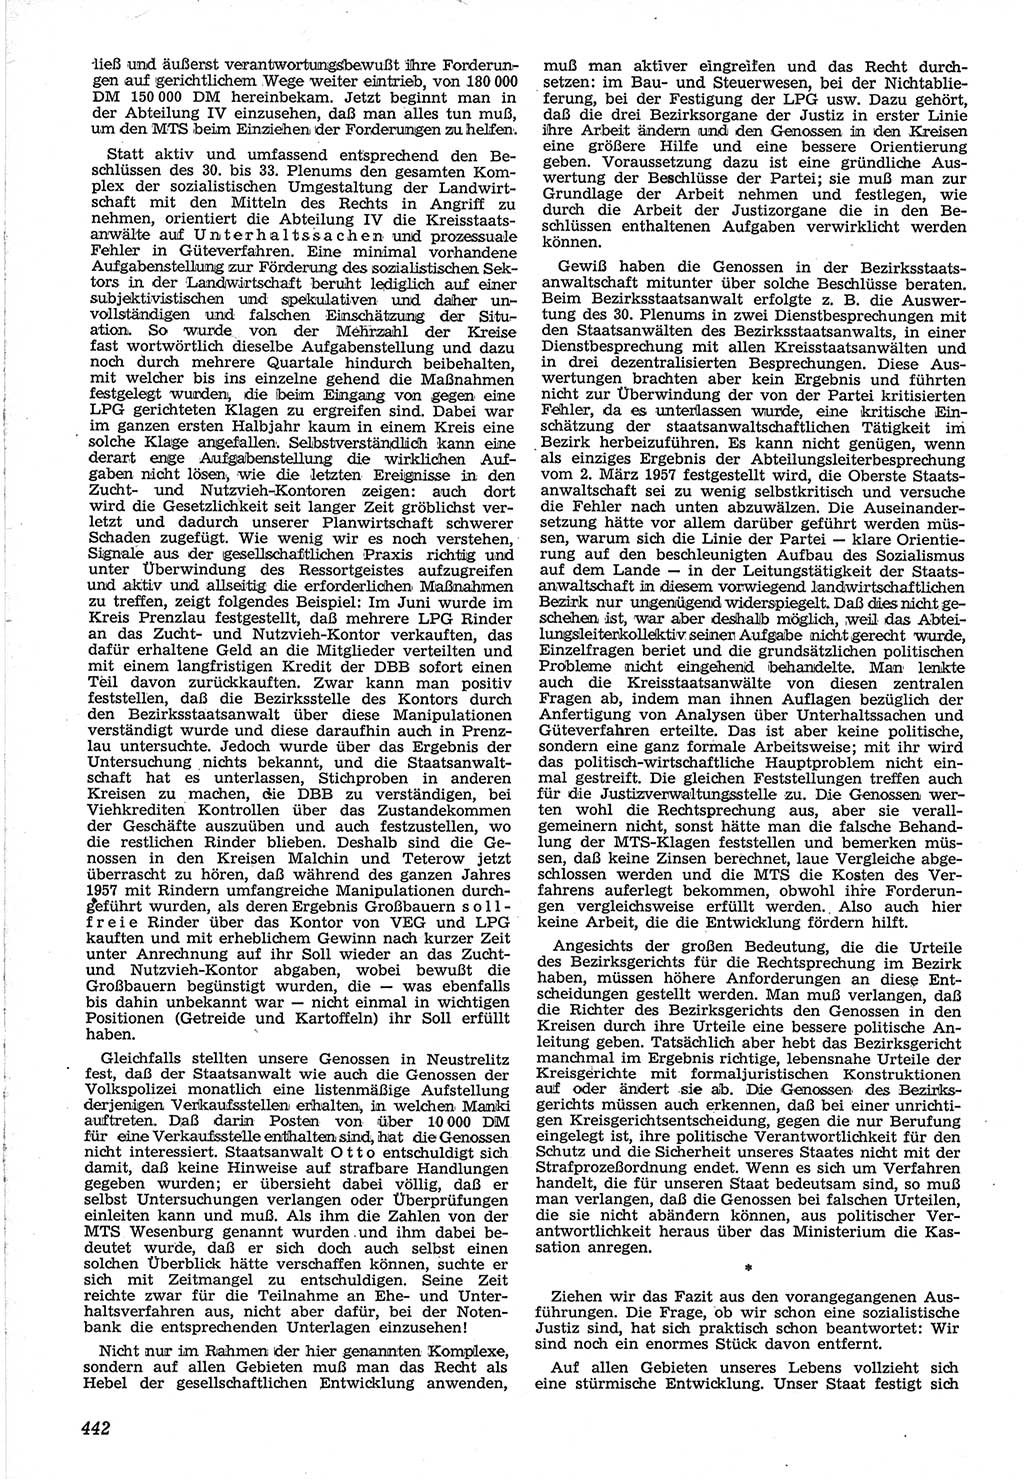 Neue Justiz (NJ), Zeitschrift für Recht und Rechtswissenschaft [Deutsche Demokratische Republik (DDR)], 12. Jahrgang 1958, Seite 442 (NJ DDR 1958, S. 442)